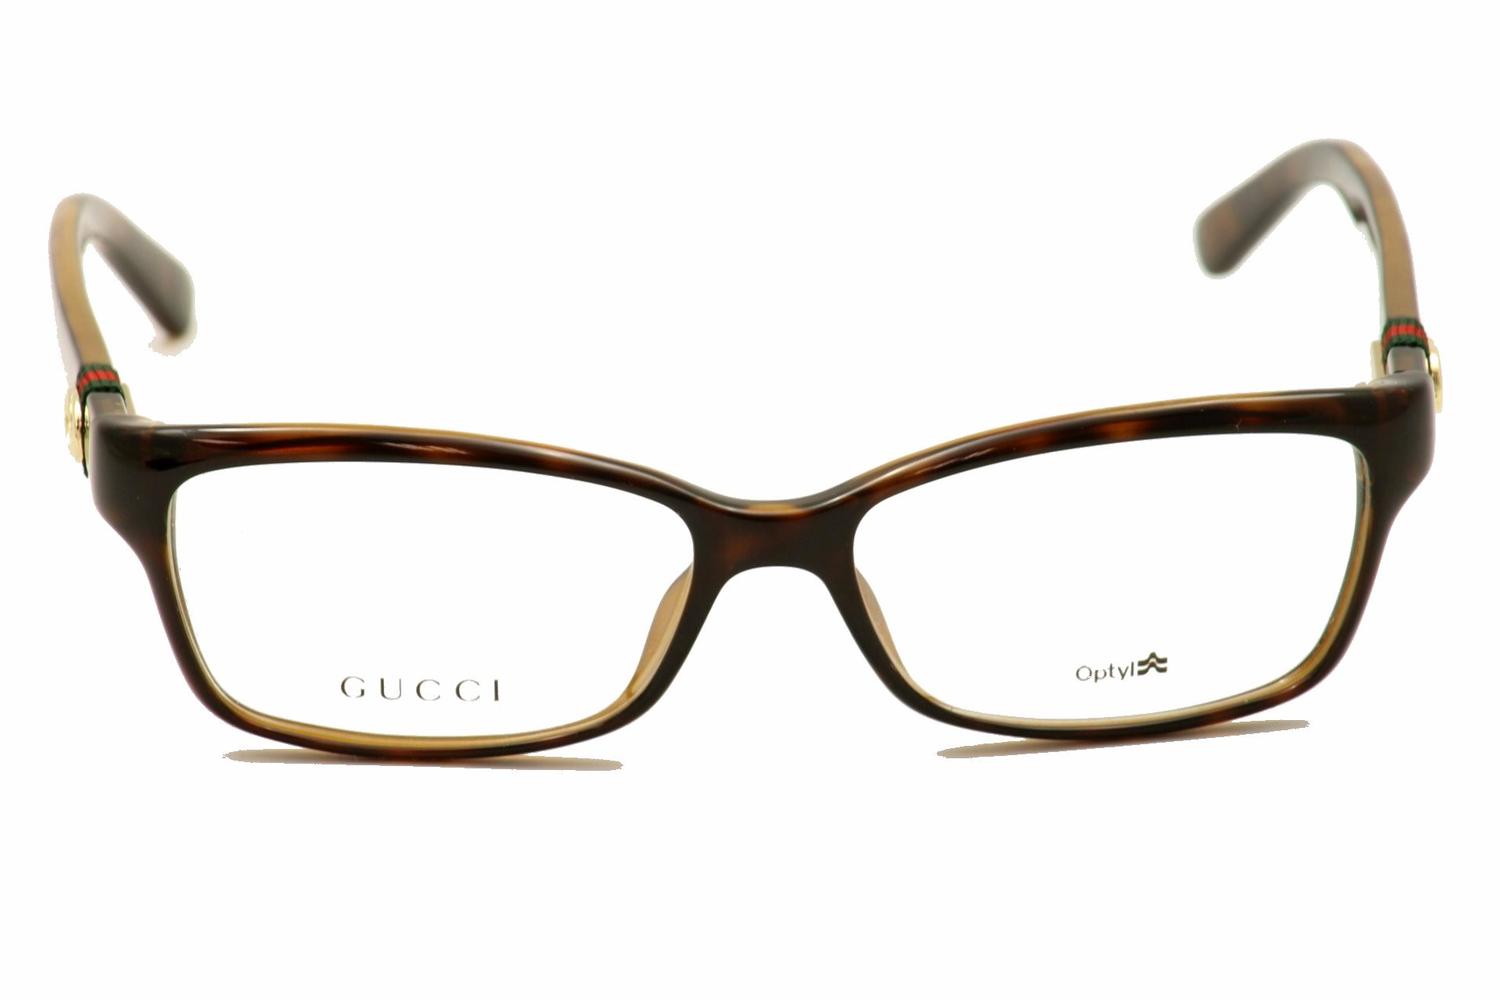 Gucci Women's Eyeglasses 3647 Full Rim Optical Frame | JoyLot.com